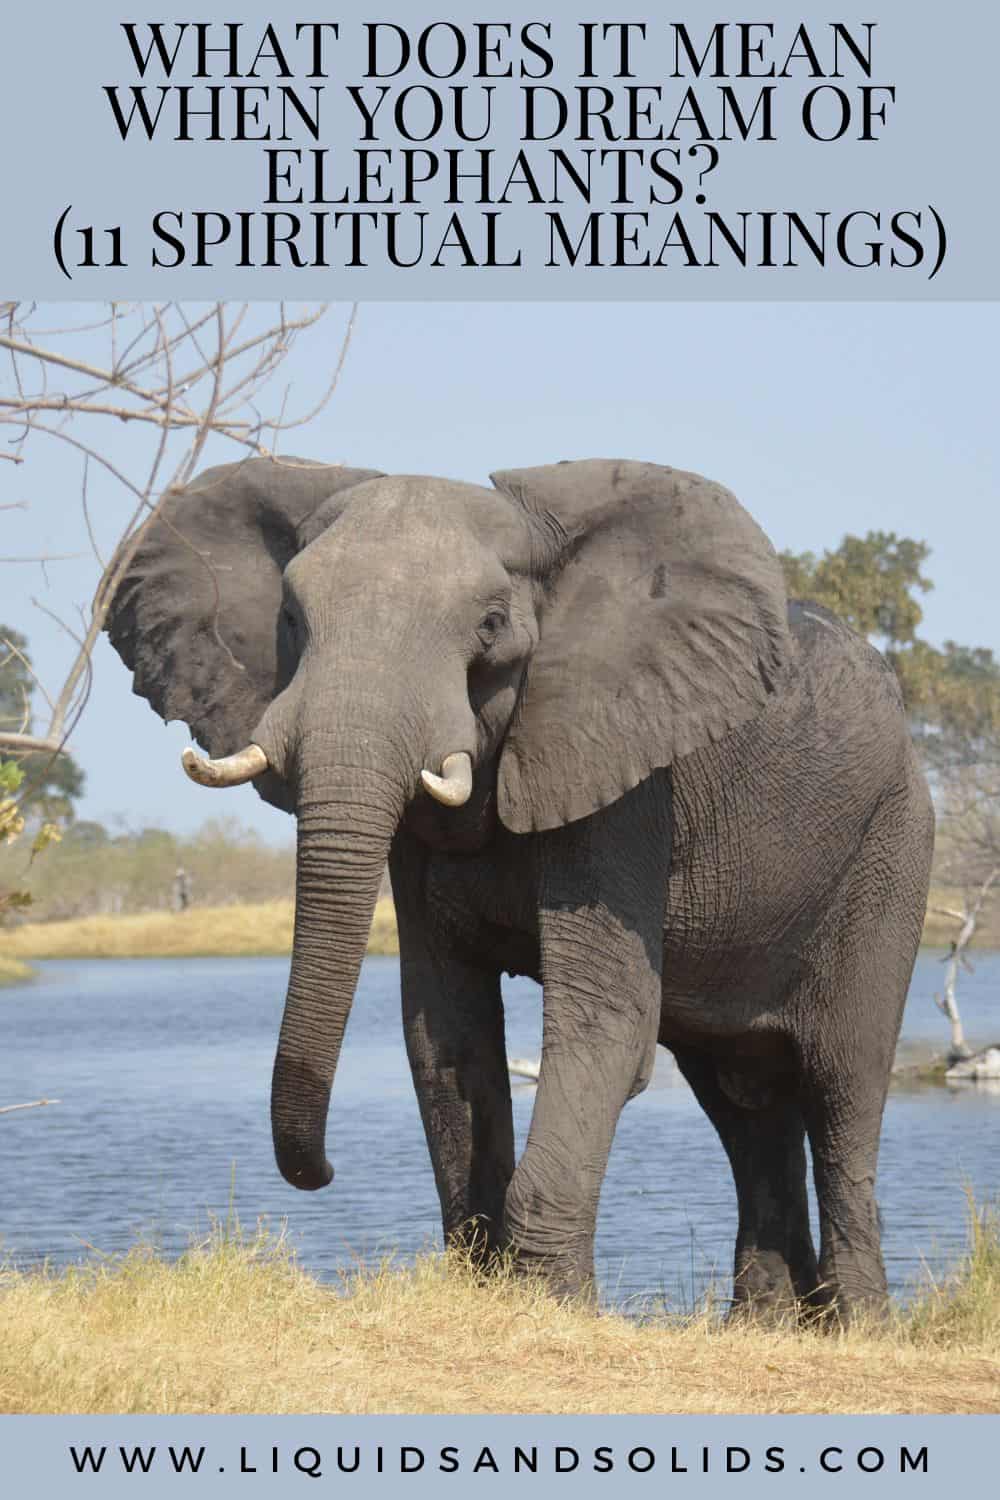  Mit jelent, ha elefántokkal álmodsz? (11 spirituális jelentés)